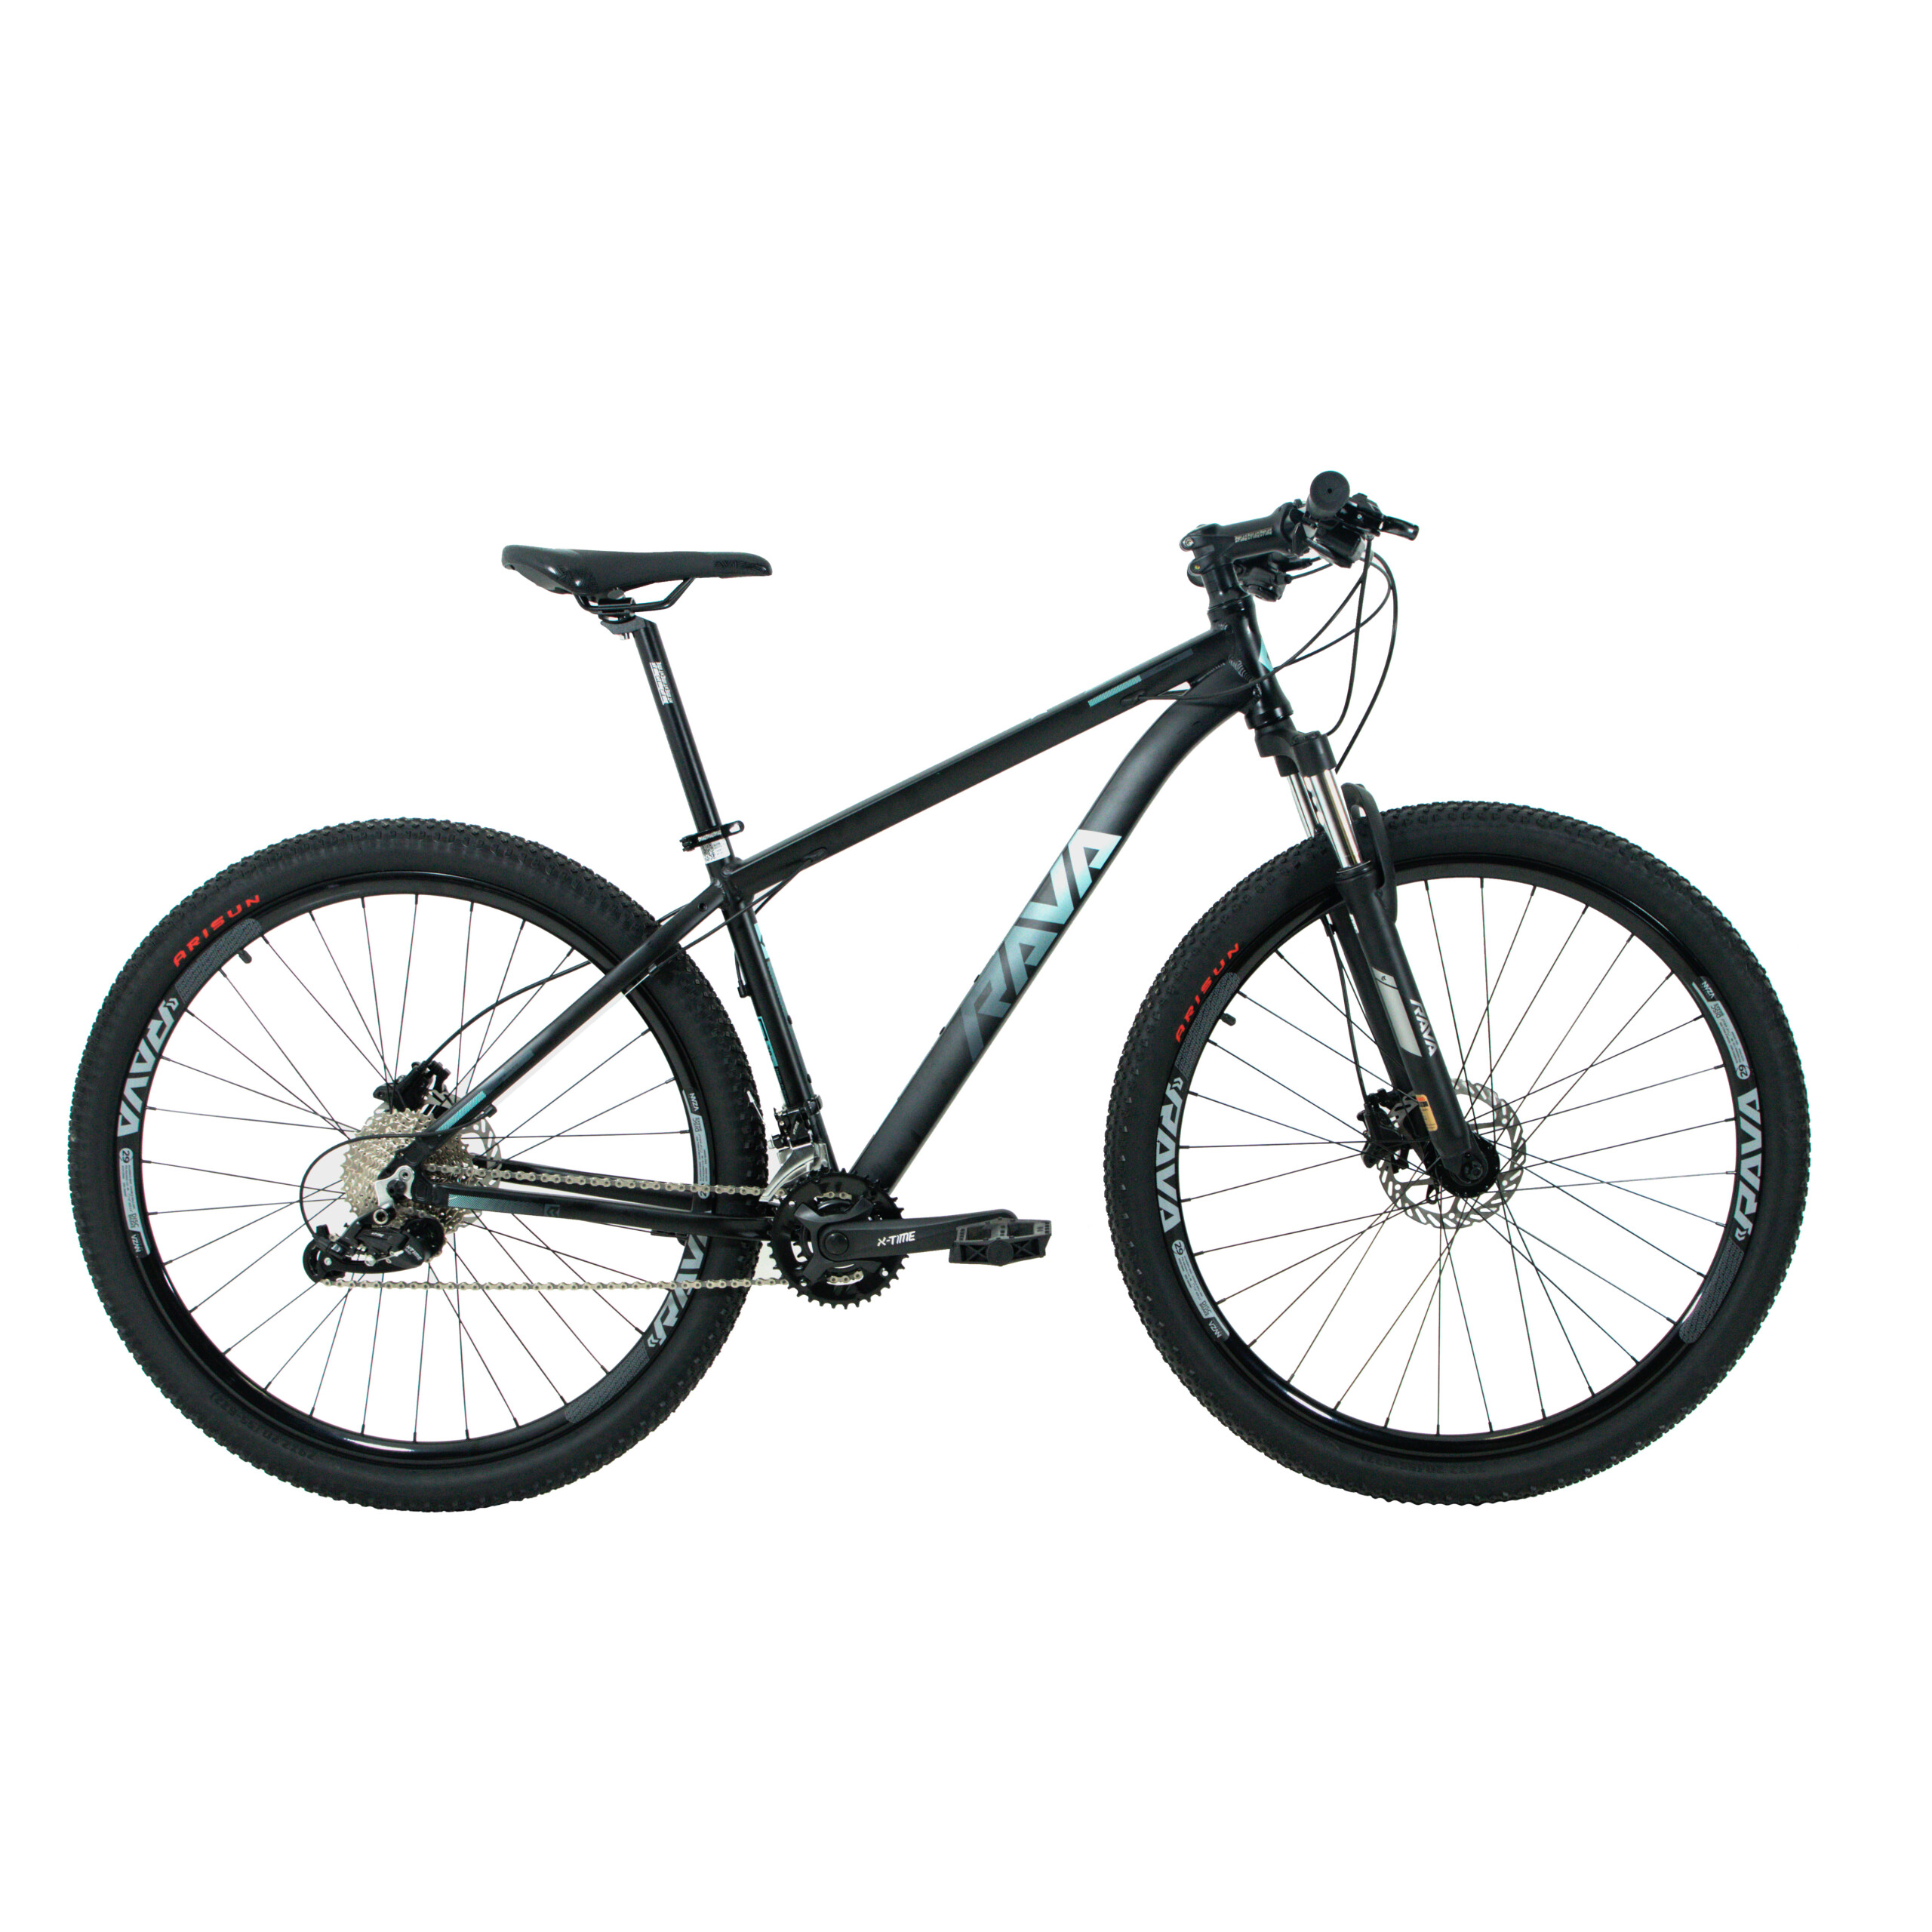 Bicicleta Pressure 29 Rava | 2022 | Edição 20v. Hidráulica | Cabeamento Interno - Preto/Cinza/Azul, 15.5"